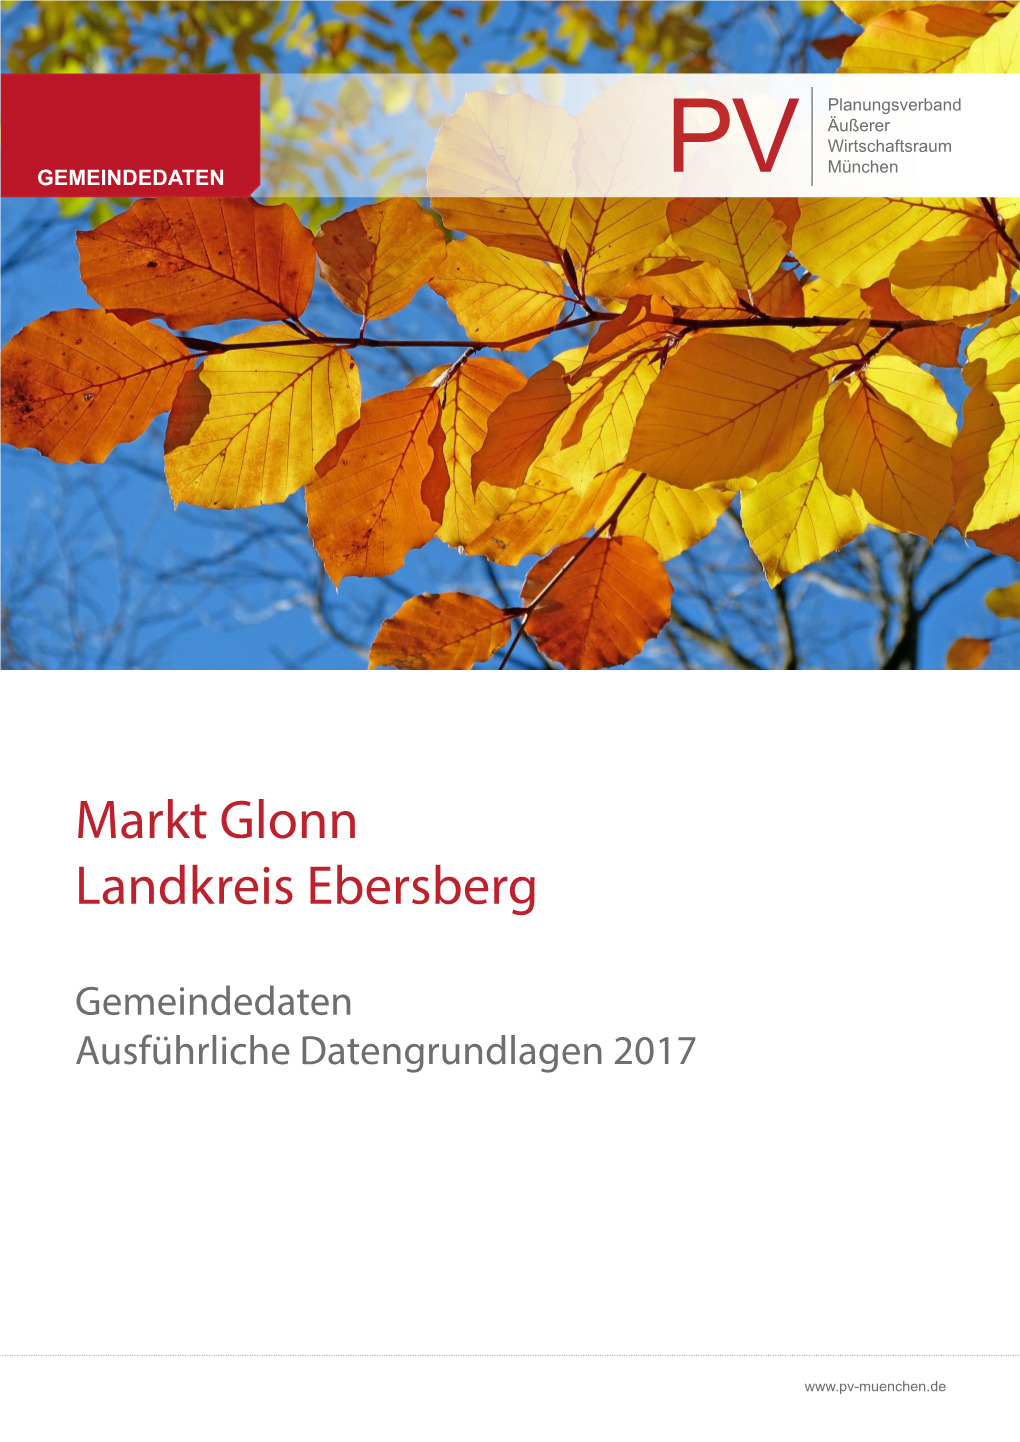 Gemeindedaten Markt Glonn 2017